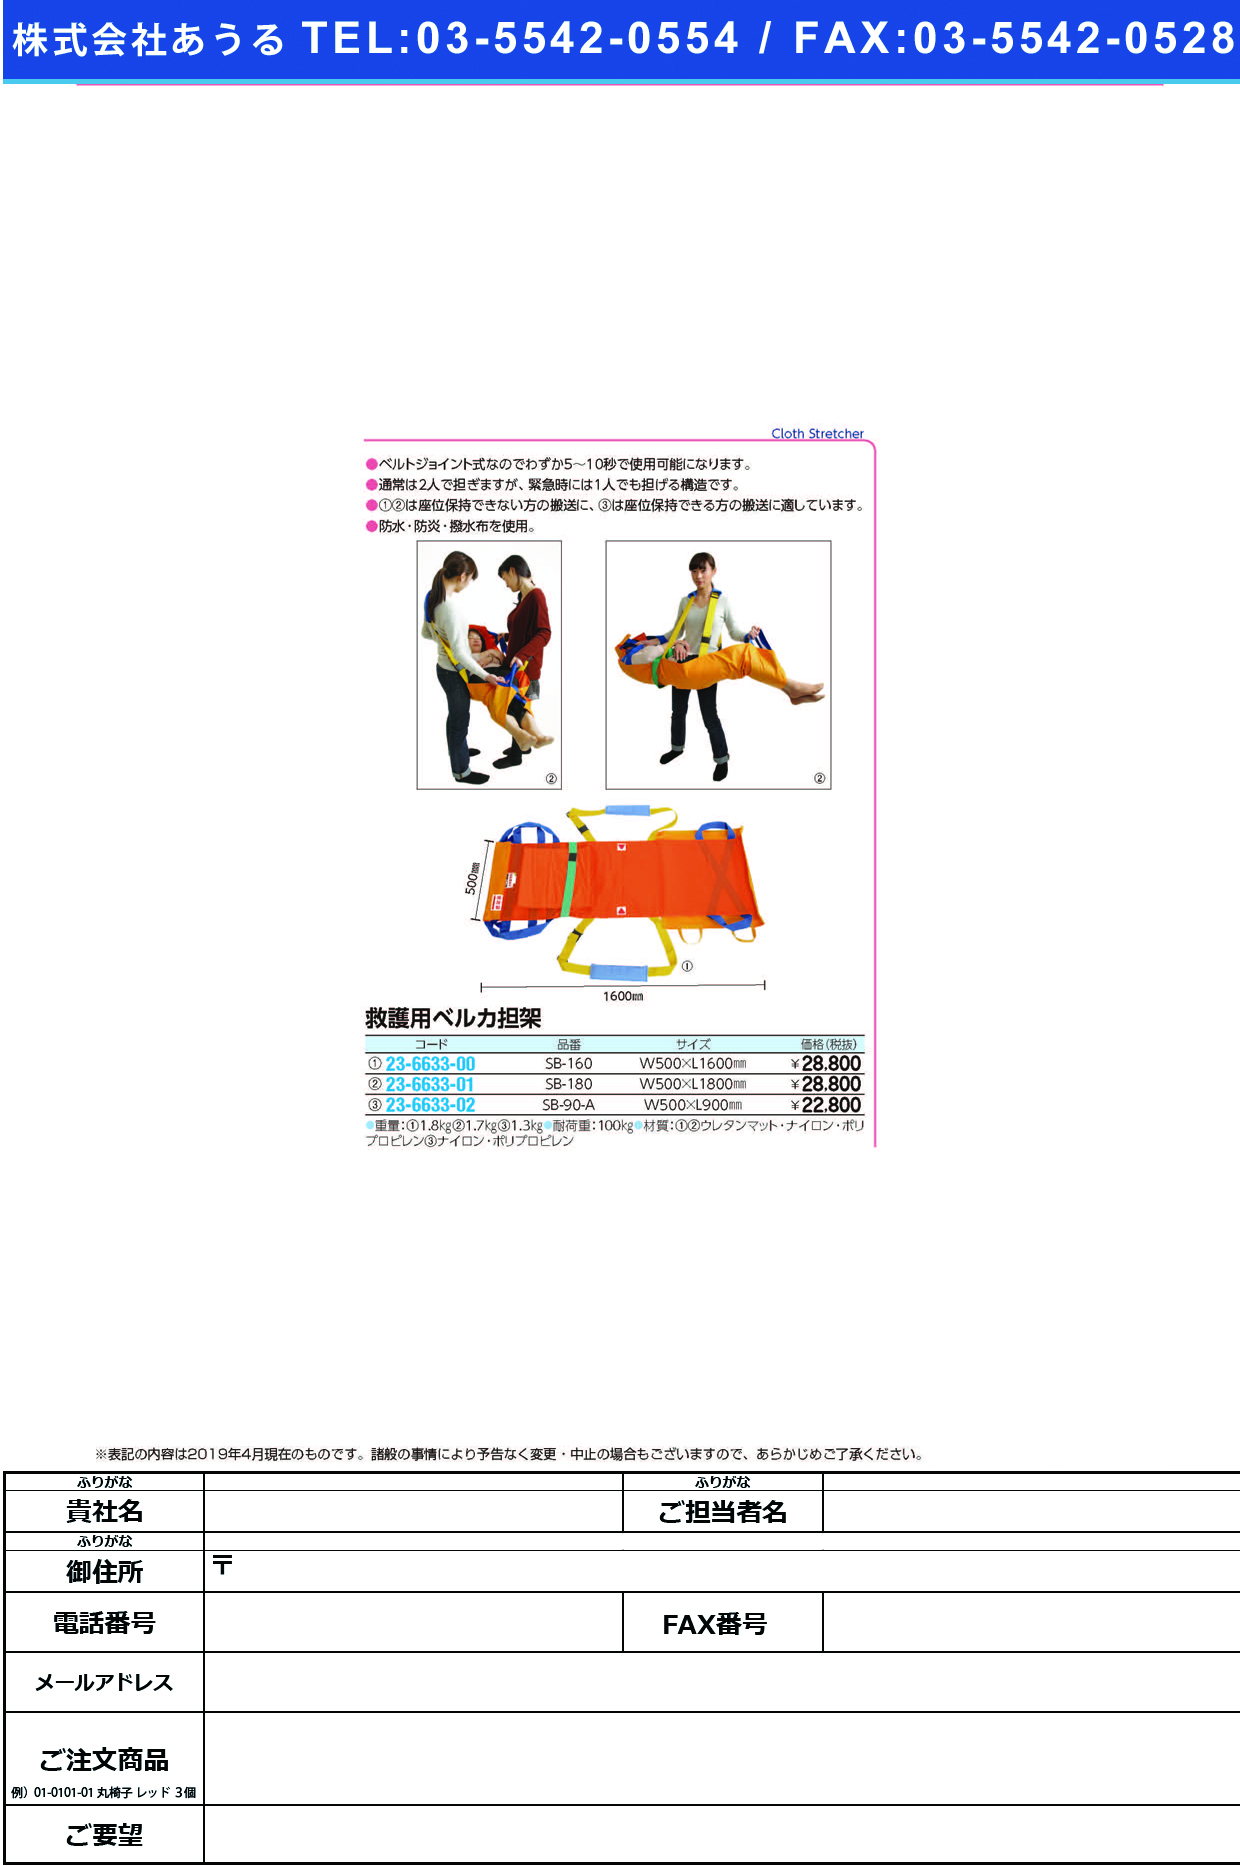 (23-6633-02)ベルカワンタッチ式救護担架 SB-90-A ﾍﾞﾙｶﾜﾝﾀｯﾁｼｷｷｭｳｺﾞﾀﾝｶ【1枚単位】【2019年カタログ商品】